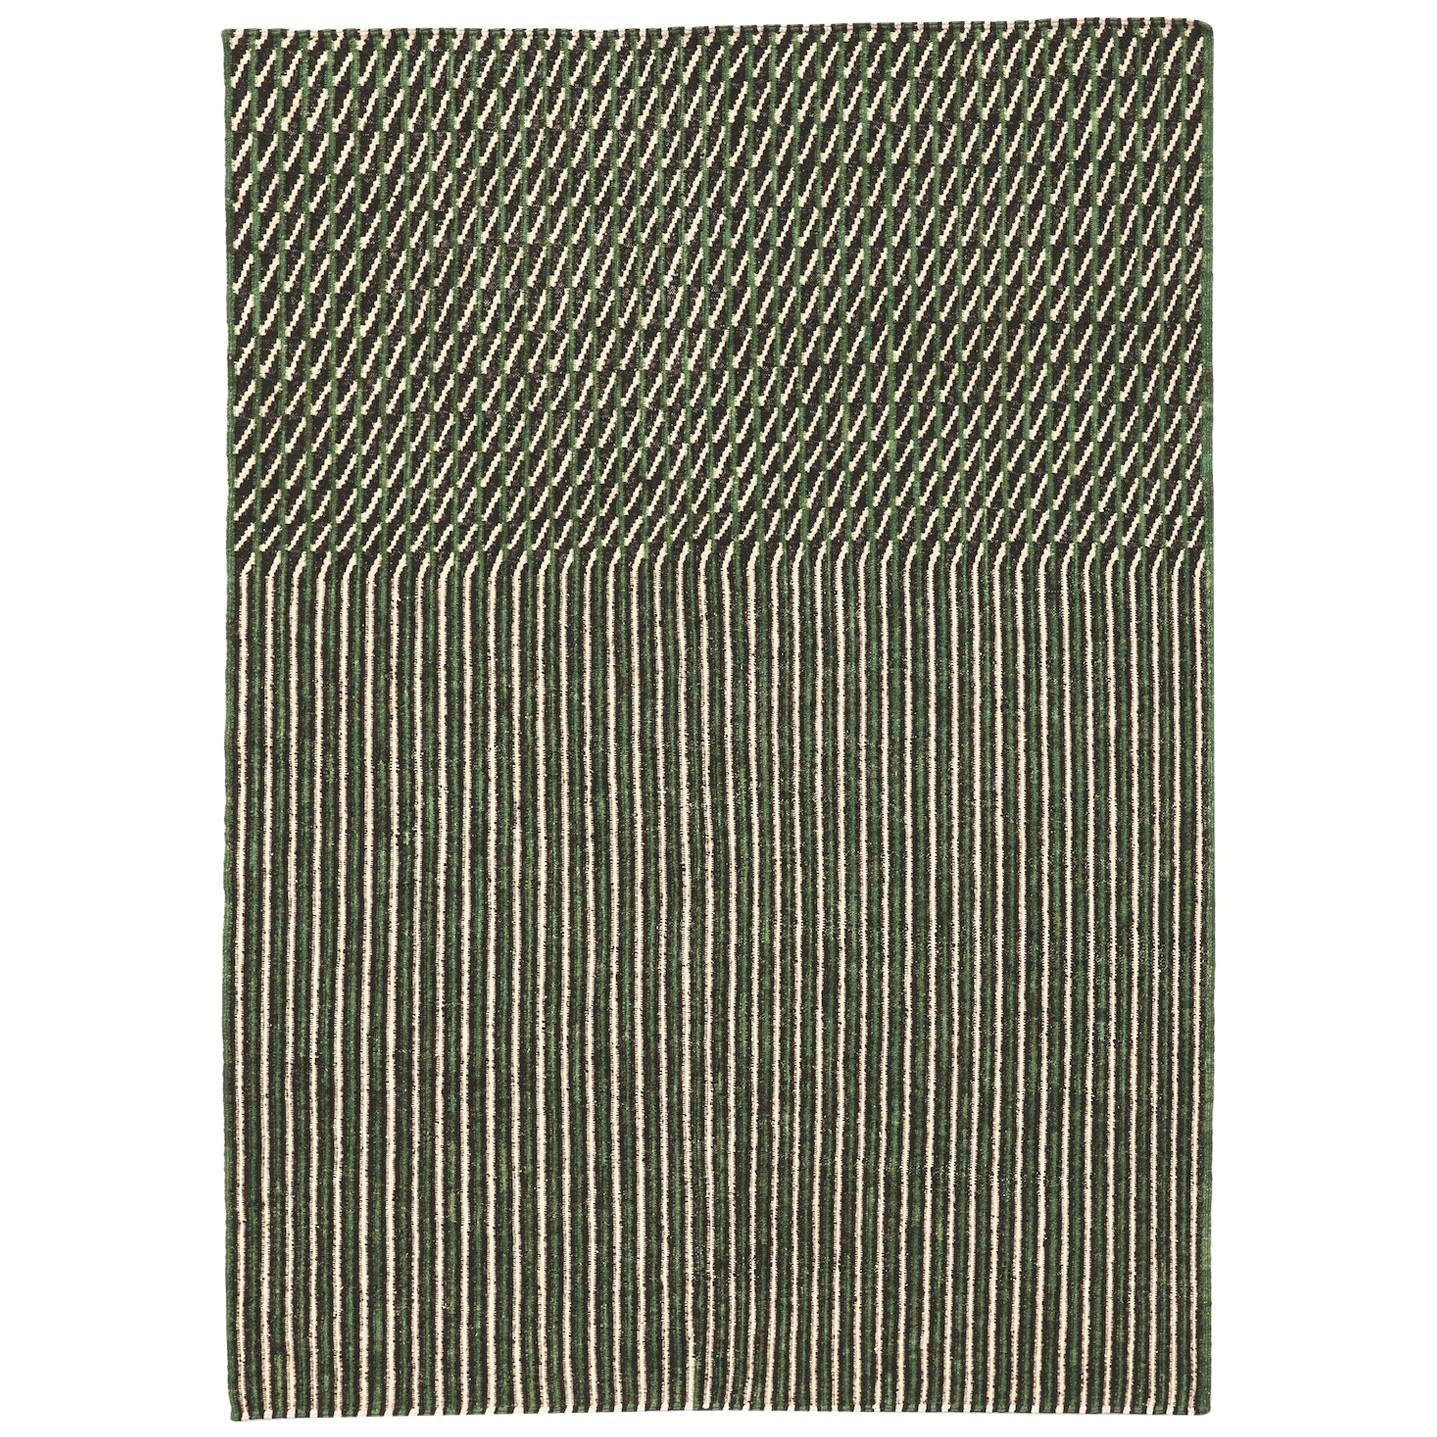 Handgesponnener Nanimarquina Grüner Blur Teppich von Ronan & Erwan Bouroullec, Extra groß